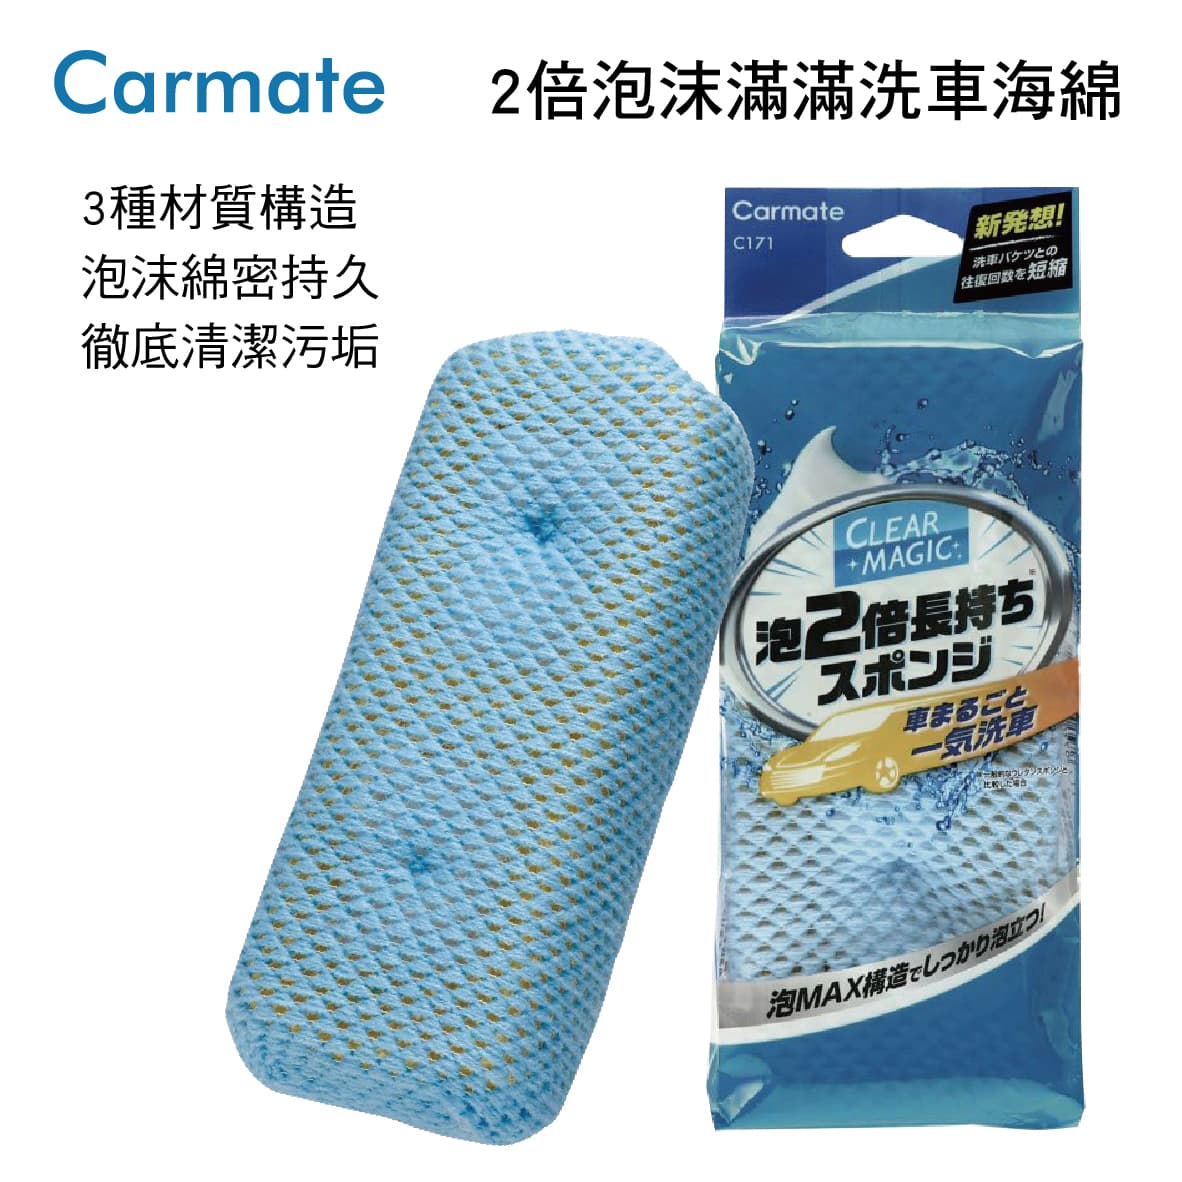 真便宜 CARMATE C171 2倍泡沫滿滿洗車海綿